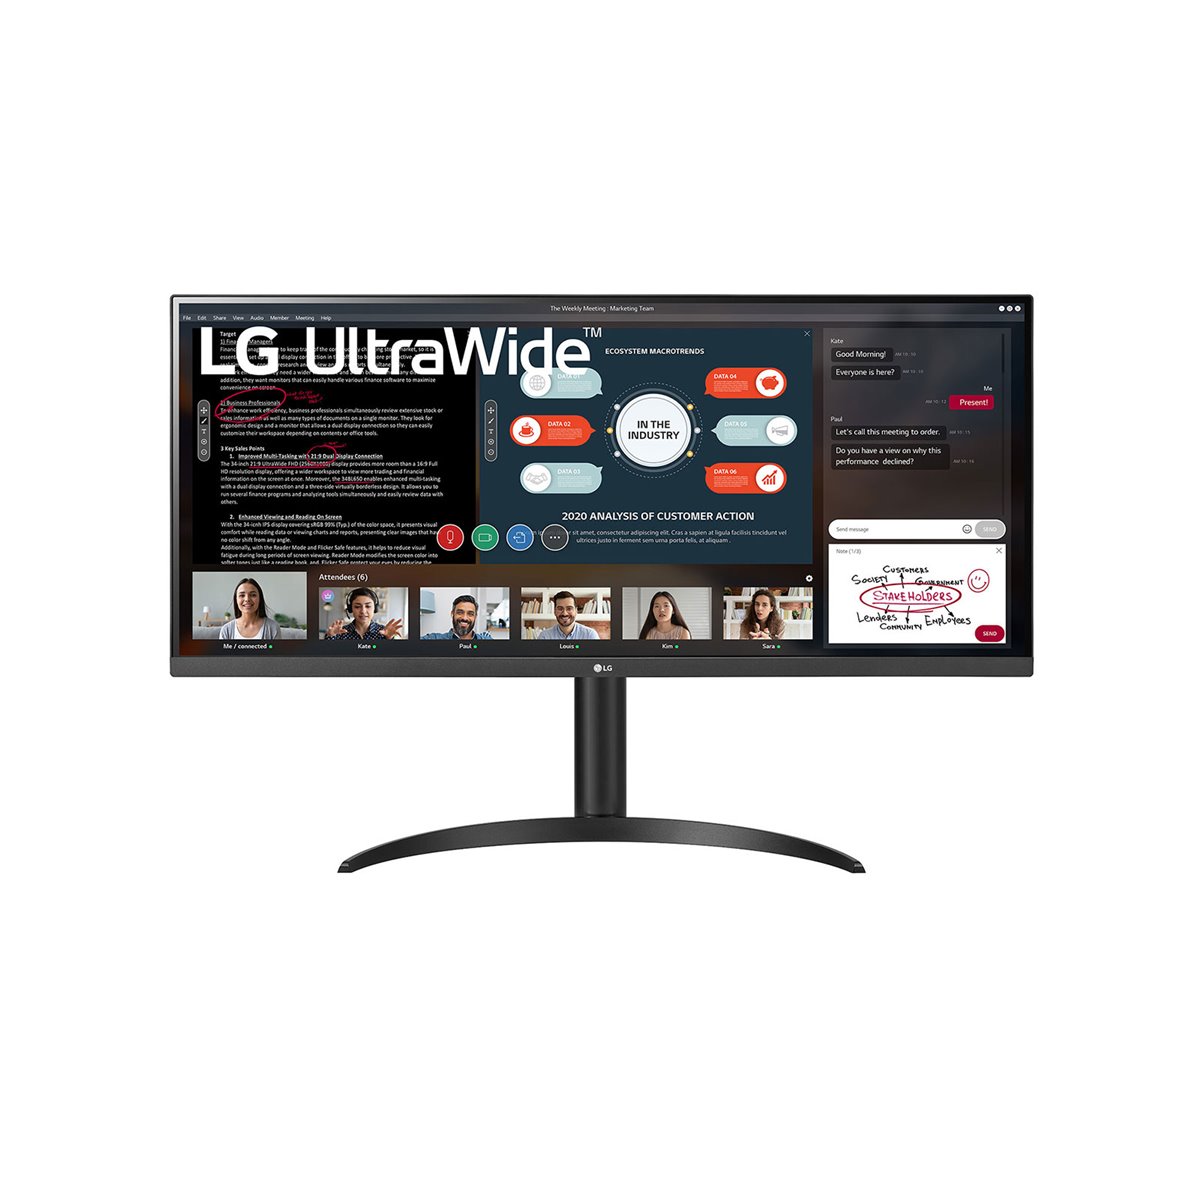 LG 34WP550-B - Monitor LED - 34 - 2560 x 1080 UWFHD a 75 Hz - IPS - 250 cd-m2 - 1000 1 - Flat Screen - 34